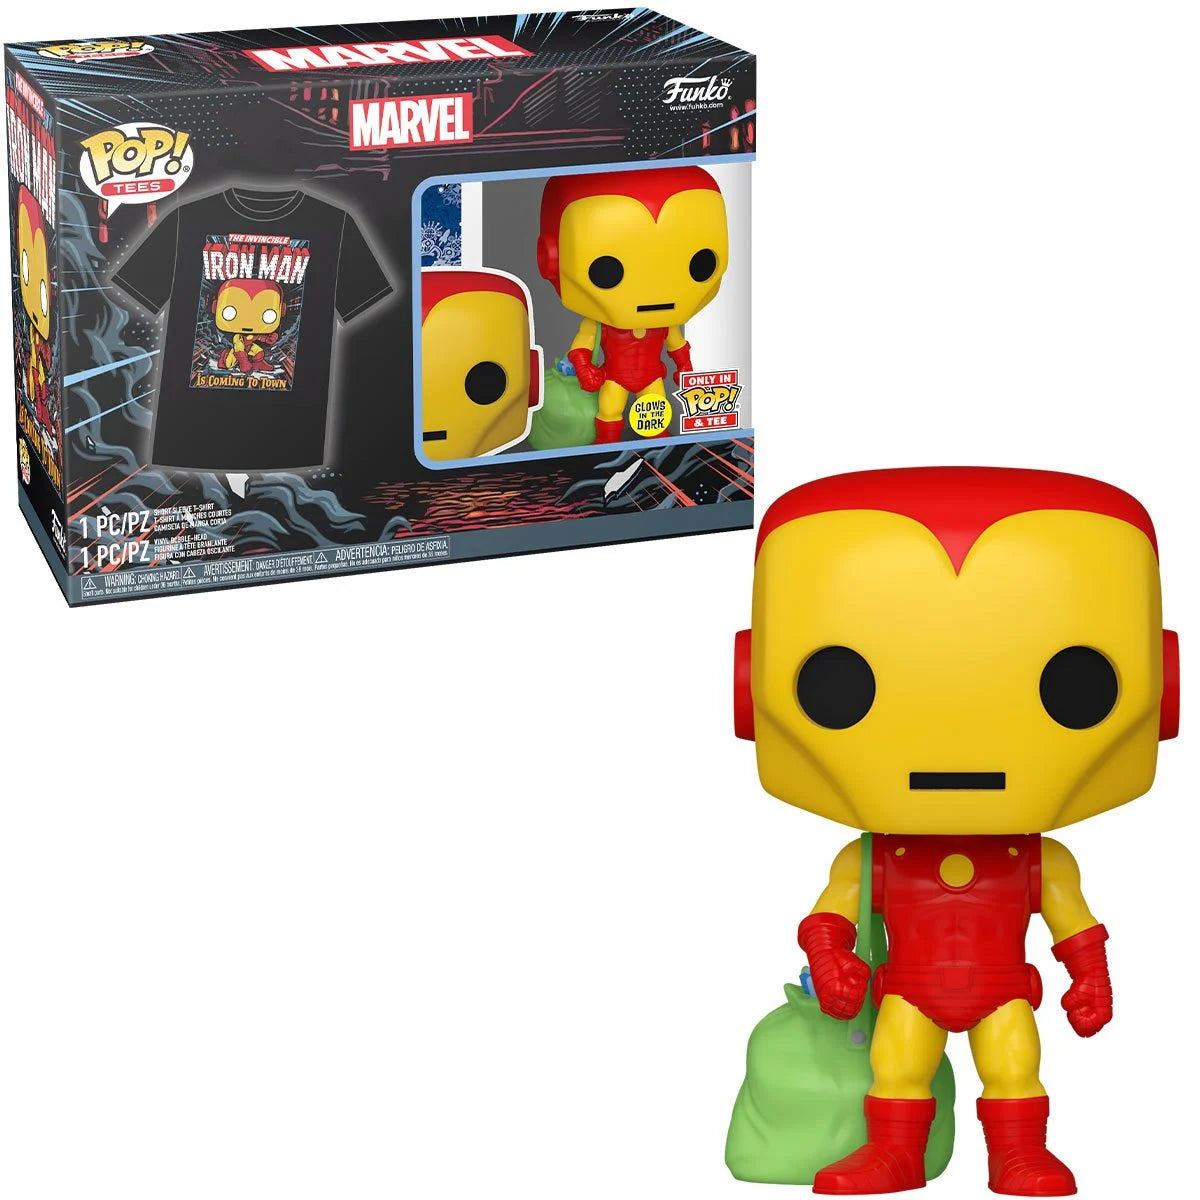 Funko Pop & Tee: Marvel Holiday - Playera Mediana Con Iron Man Glow